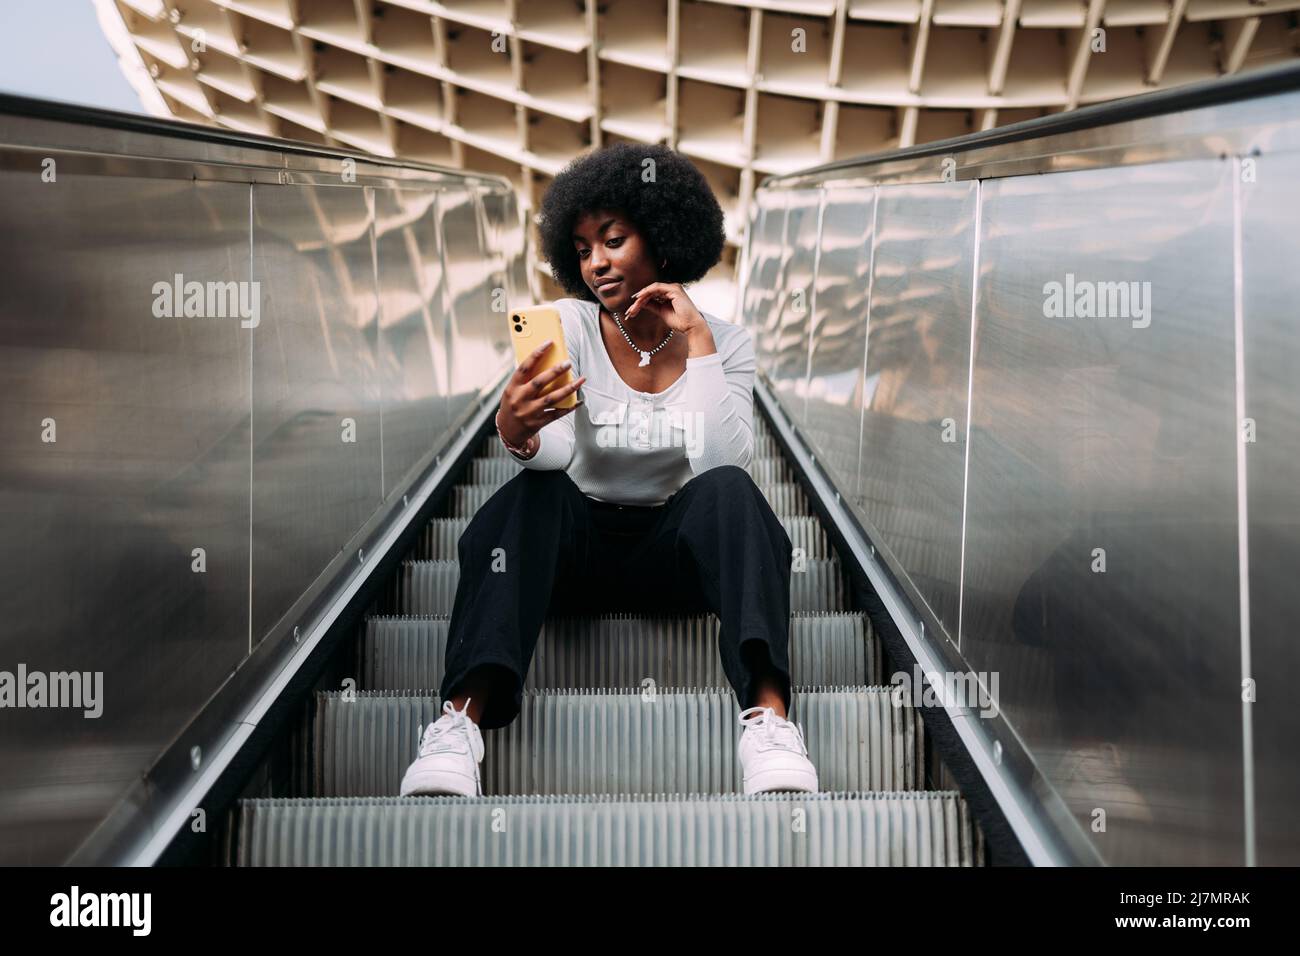 Jeune femme adolescente noire avec cheveux afro assis sur un escalier roulant en plein air prenant un selfie. Banque D'Images